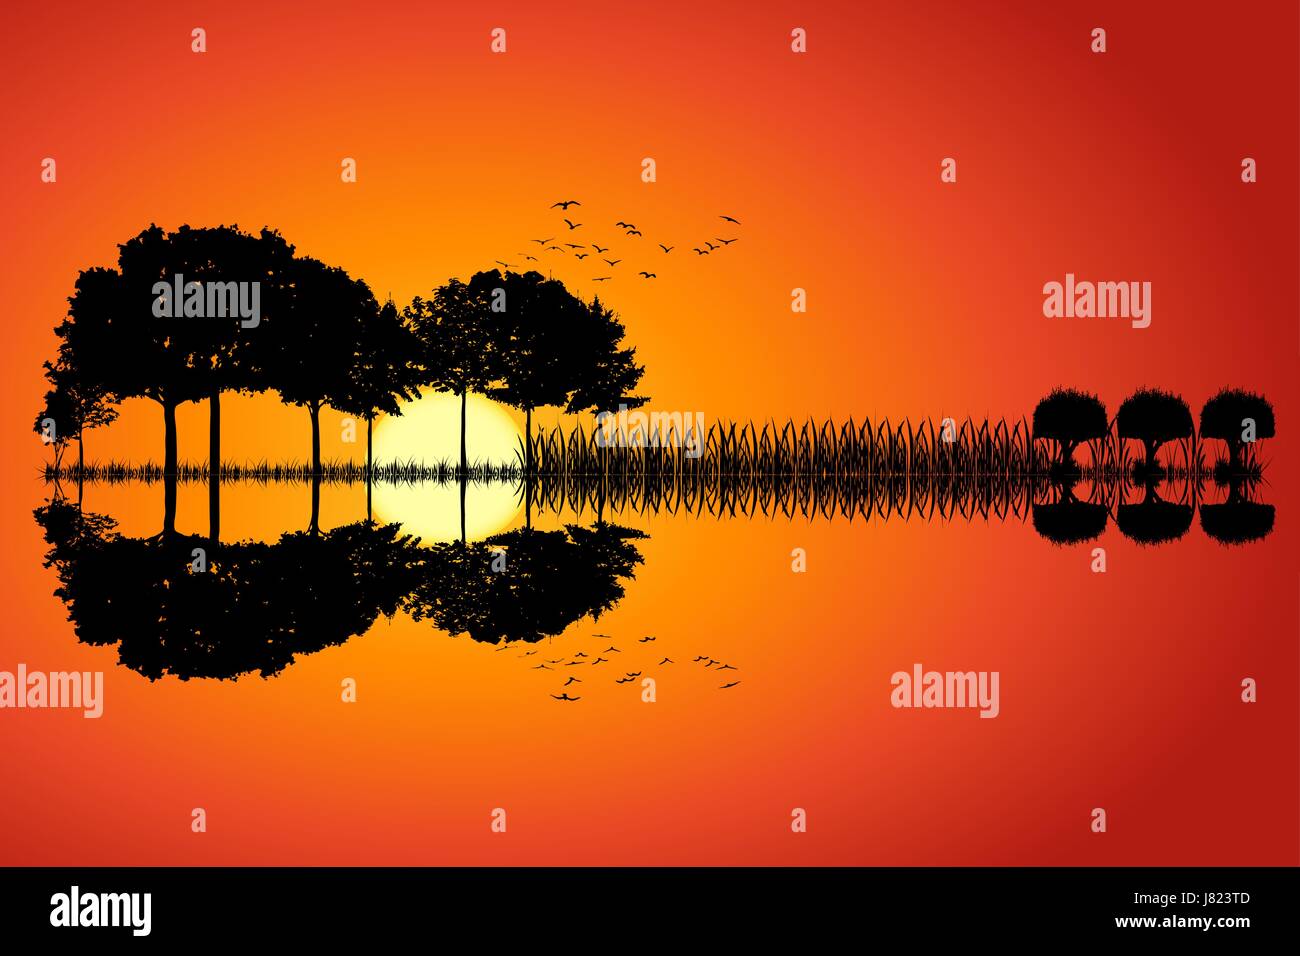 Arbres disposés en forme d'une guitare sur un fond coucher de soleil. L'île de musique avec une guitare reflet dans l'eau. Conception d'illustration vectorielle. Illustration de Vecteur